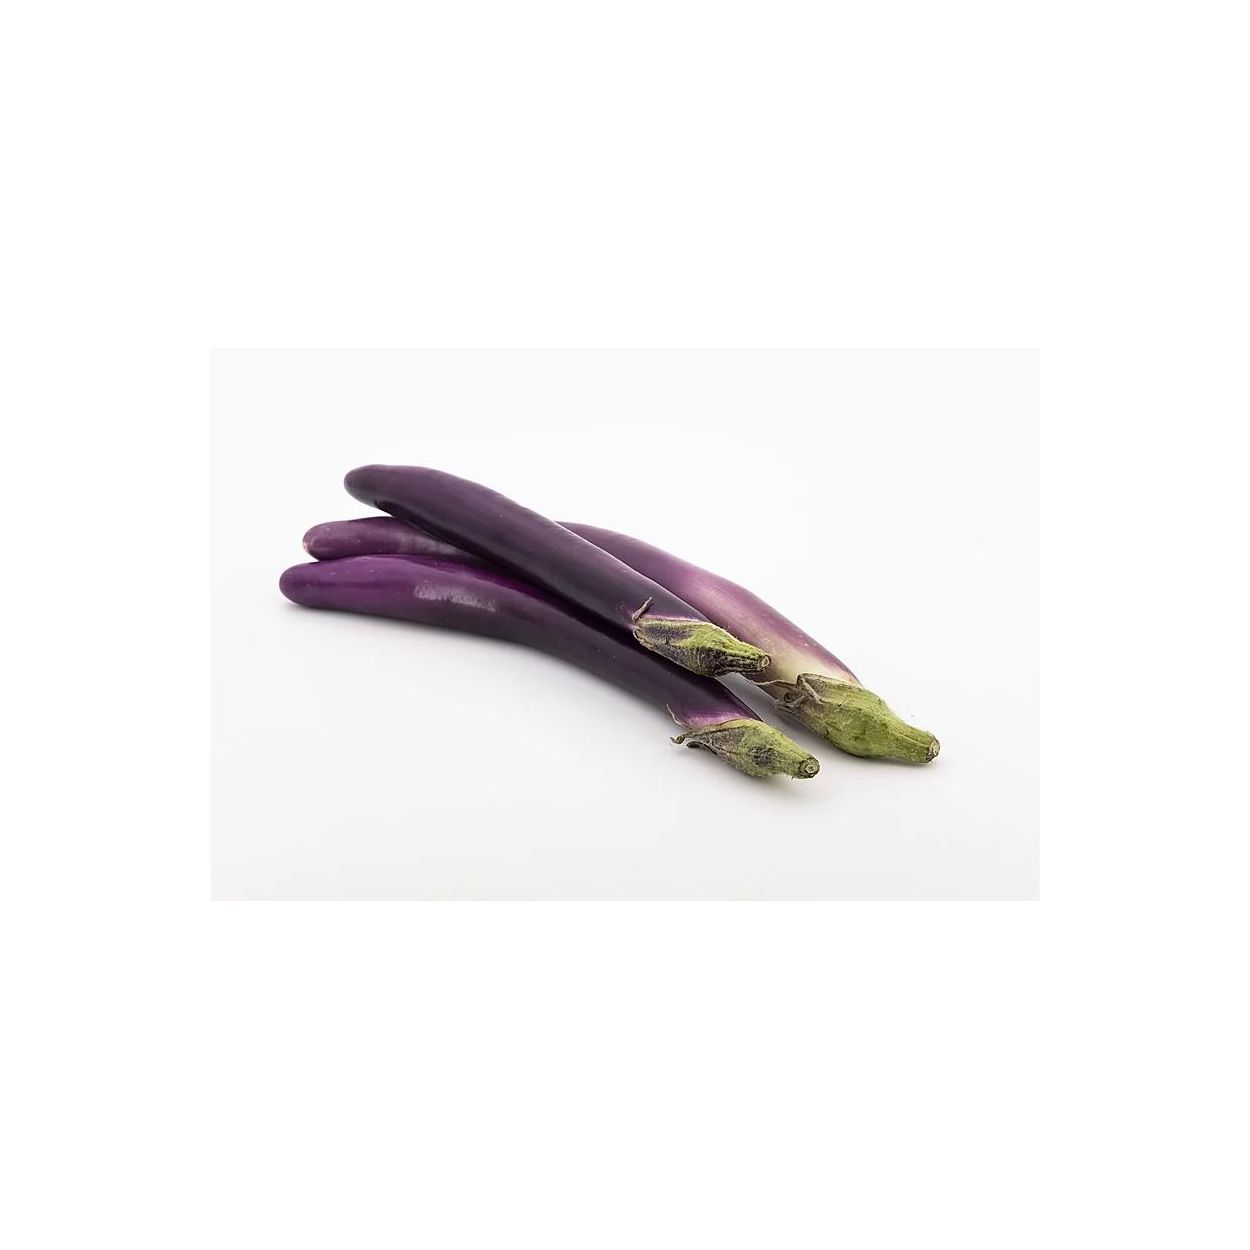 Brim Seed Co. - Long Purple Eggplant Heirloom Seed